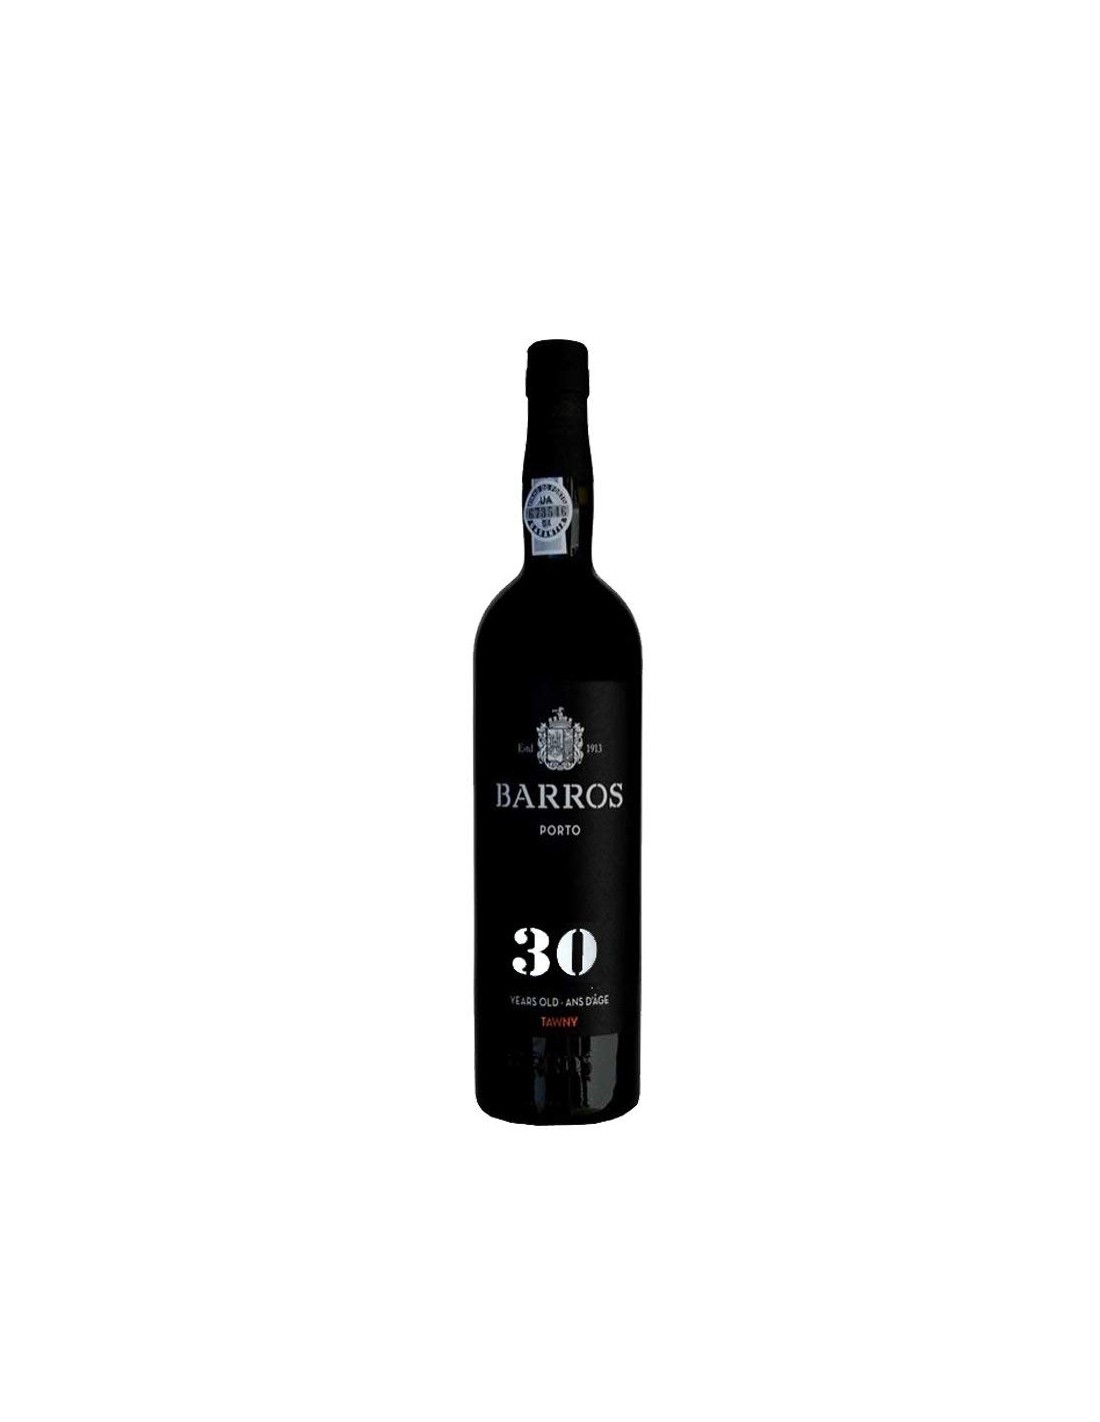 Vin porto rosu dulce, Barros Tawny, 30 de ani, 0.75L, 20% alc., Portugalia alcooldiscount.ro